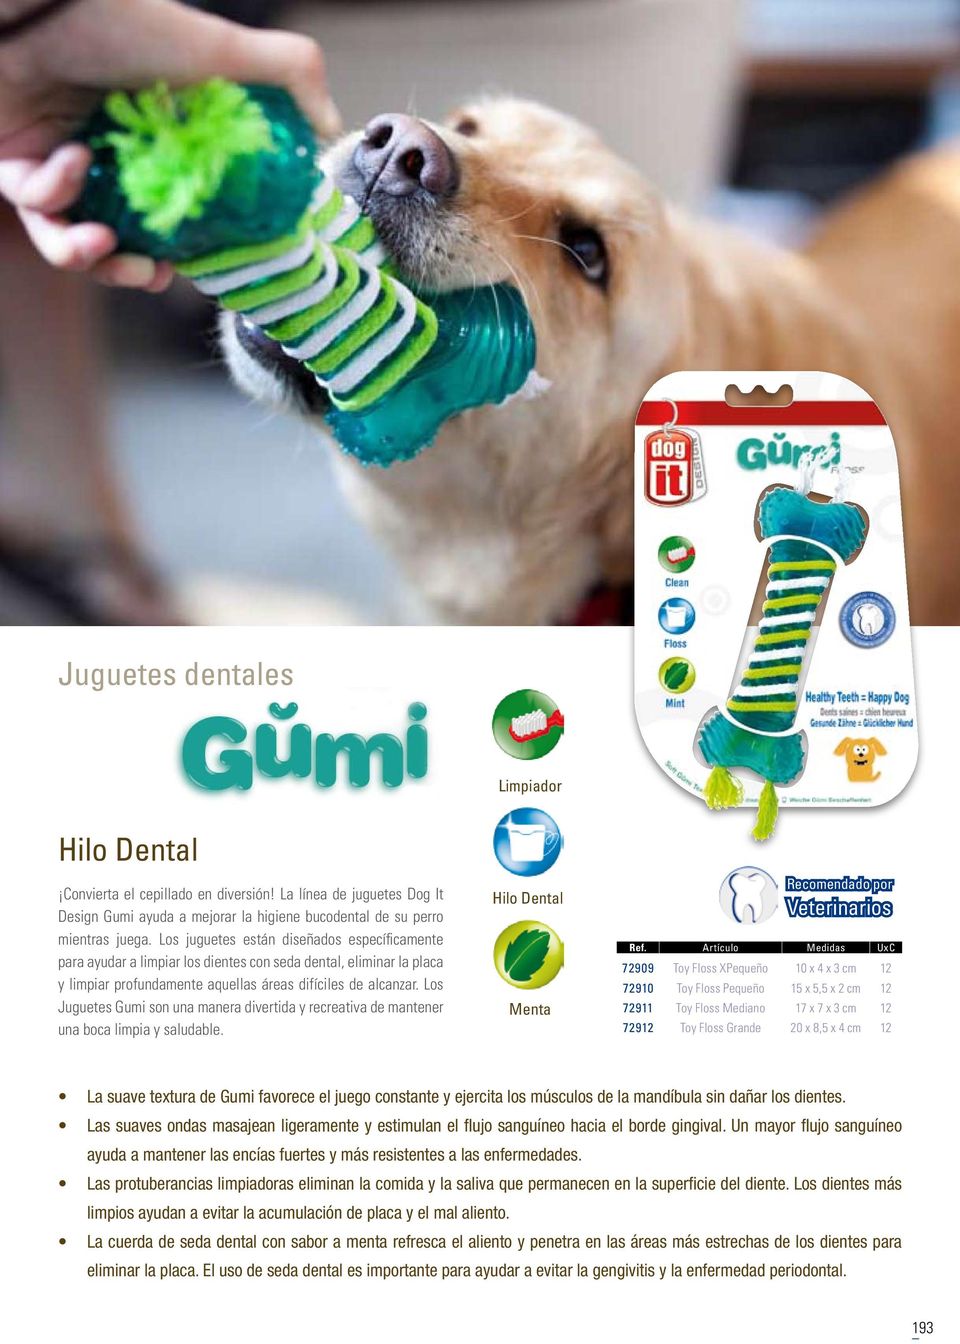 Los Juguetes Gumi son una manera divertida y recreativa de mantener una boca limpia y saludable.